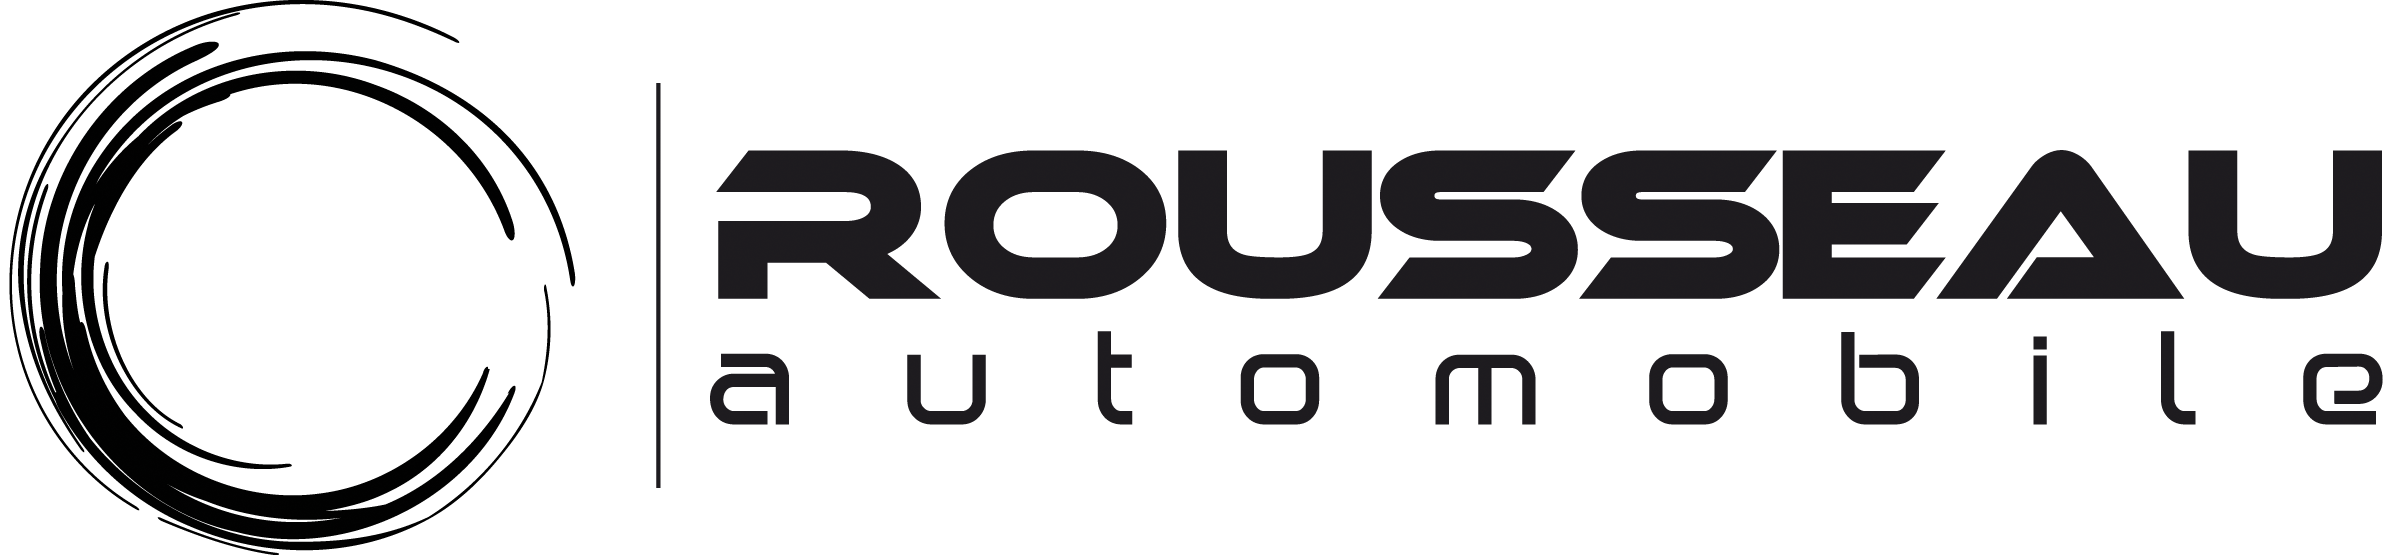 Rousseau Automobile